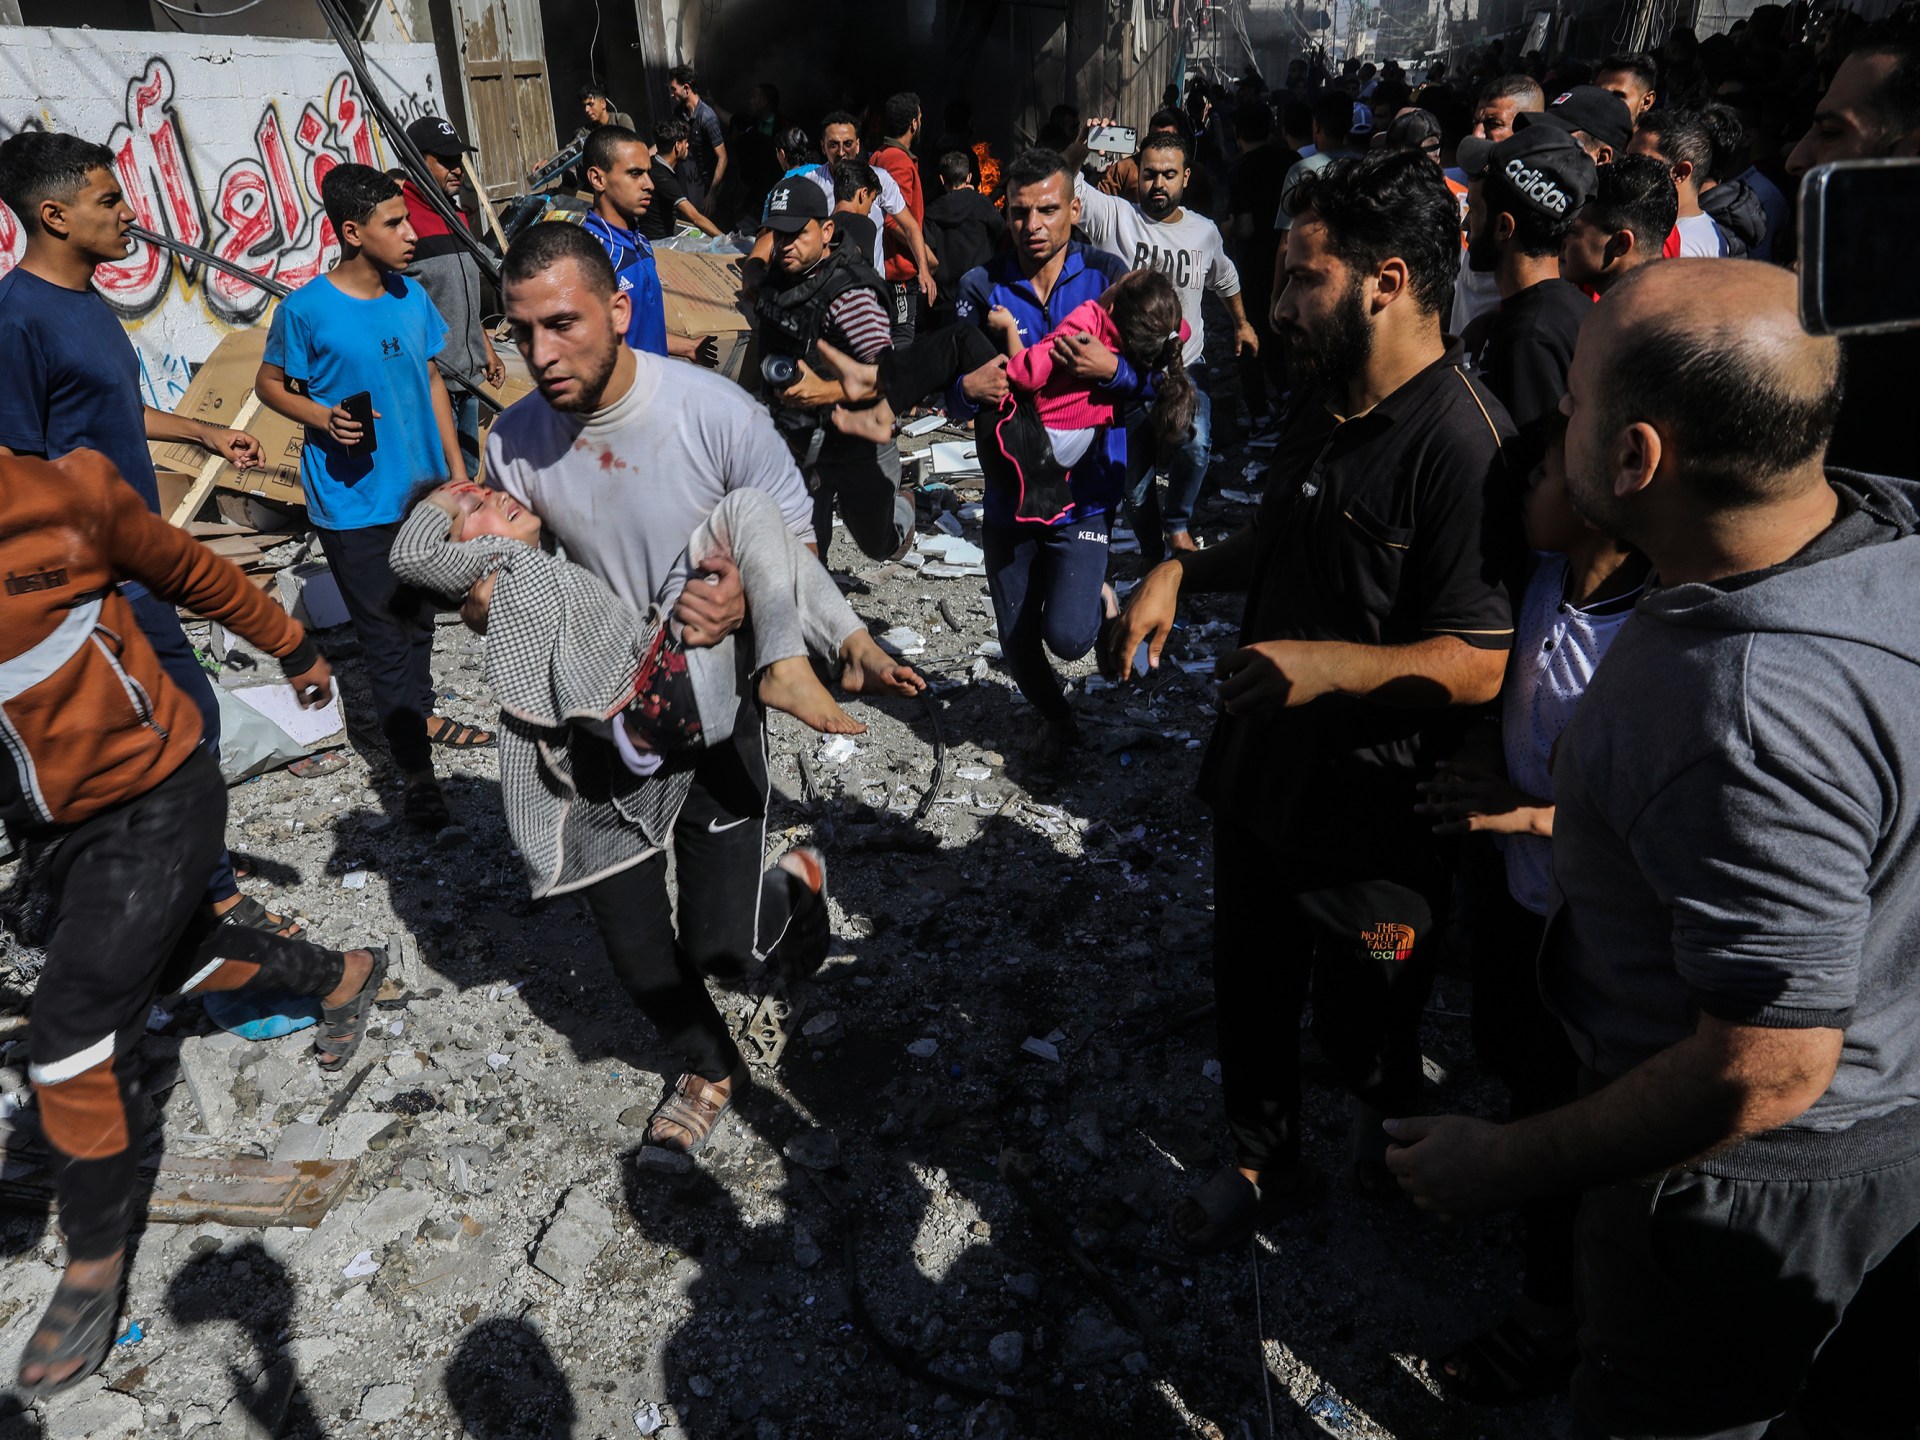 حكومة غزة: يصعب تحديث حصيلة الضحايا مع تزايدهم بالمئات يوميا | أخبار – البوكس نيوز